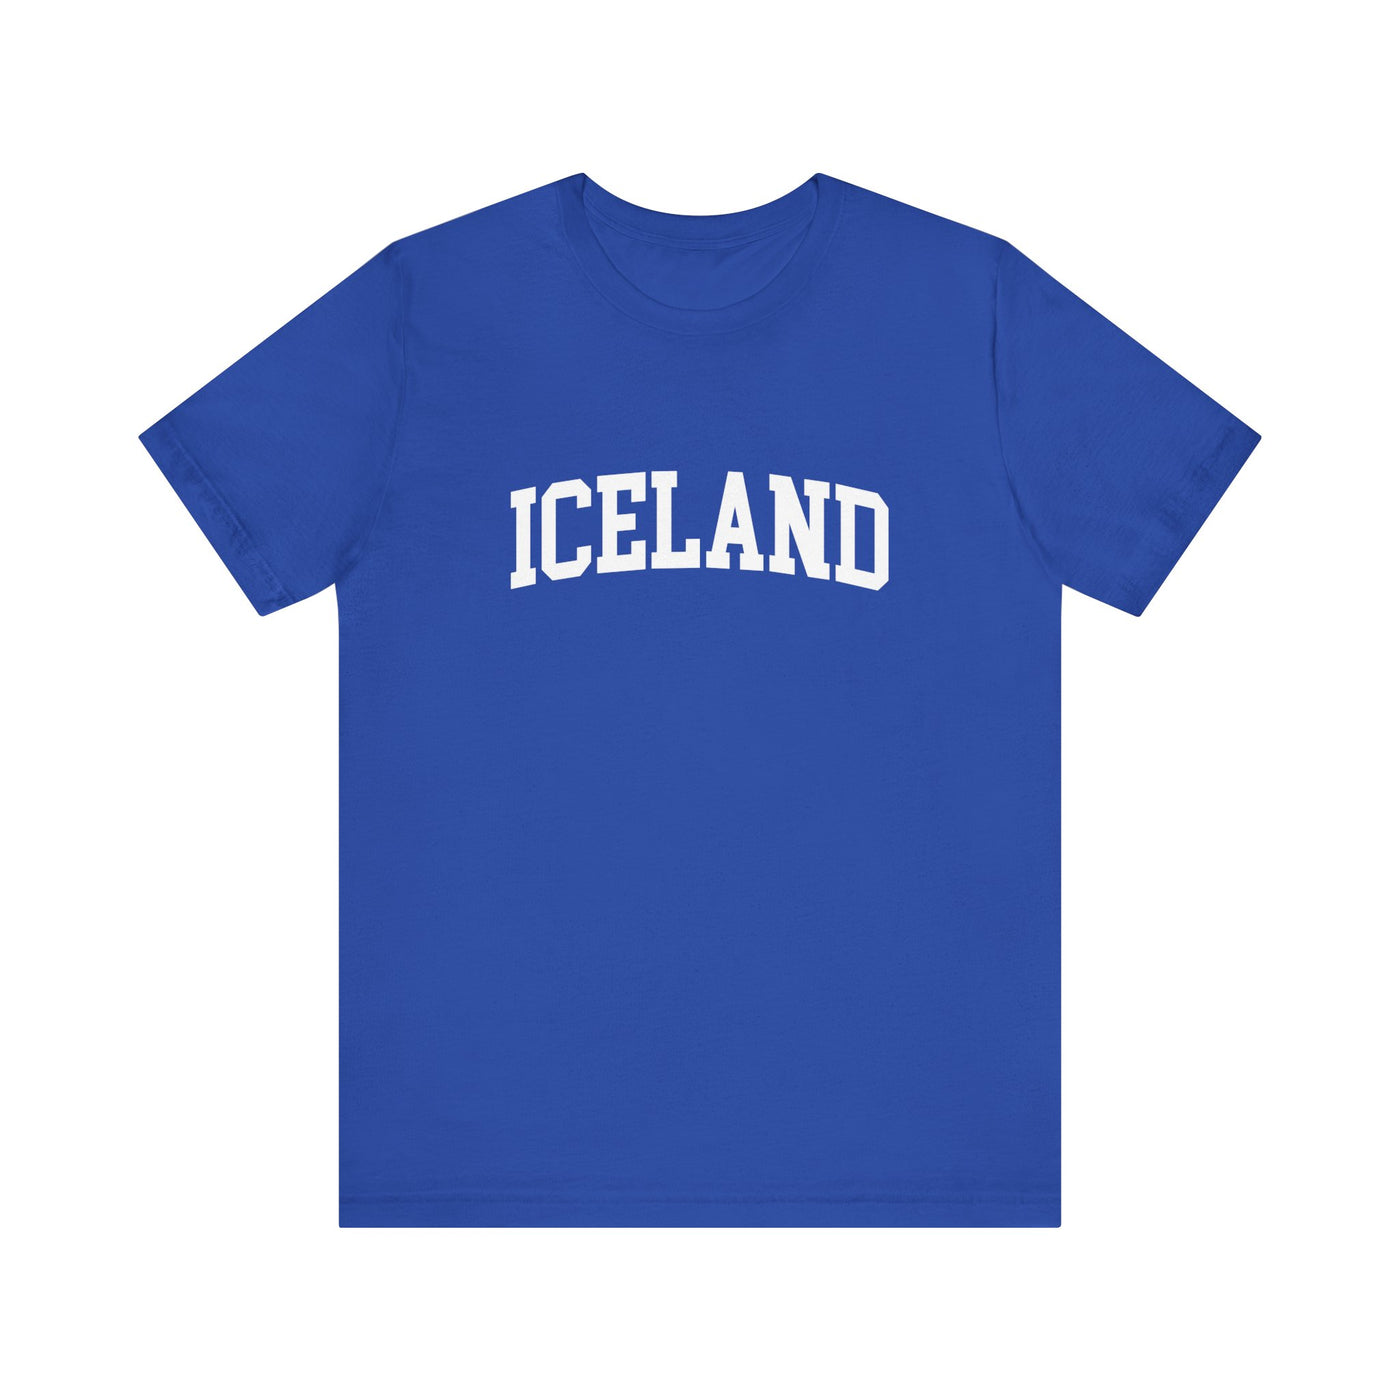 Iceland University Unisex T-Shirt